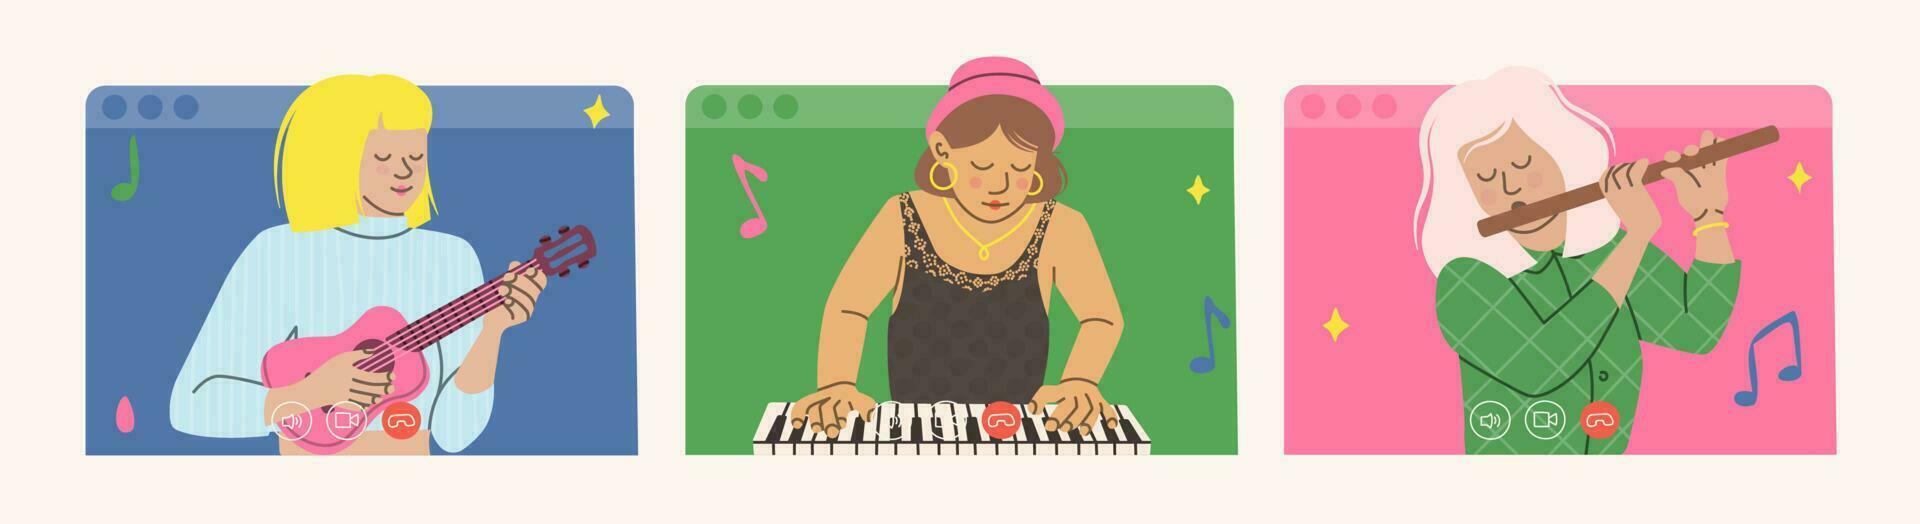 online Musik- Konzert Konzept. Vektor Illustration von drei Mädchen mit Musical Instrumente. Banner zum ein Musik- Festival.